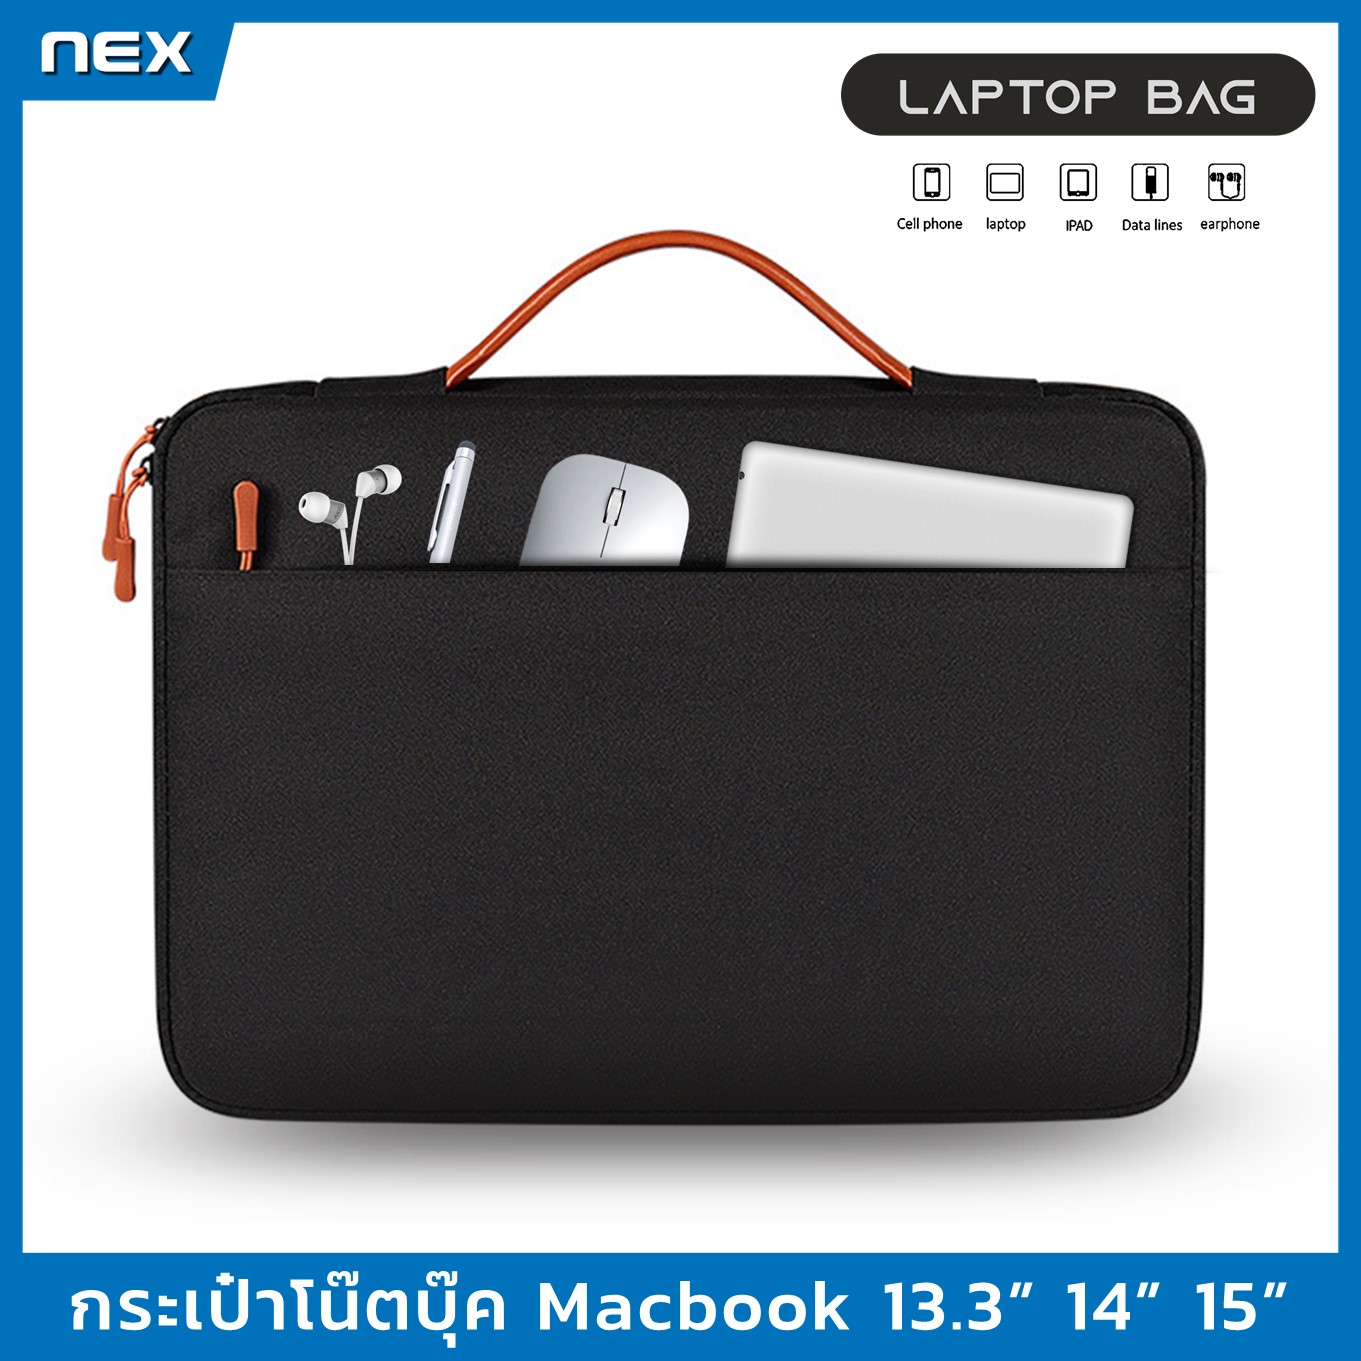 【พร้อมส่ง】กระเป๋าโน๊ตบุ๊ค กระเป๋าMacbook เคสโน๊ตบุ๊ค เคสMacbook กระเป๋าแล็ปท็อป 12, 13, 14, 15, 15.6นิ้ว กระเป่าคอมพิวเตอร์ Laptop Bag Macbook Sleeve Case